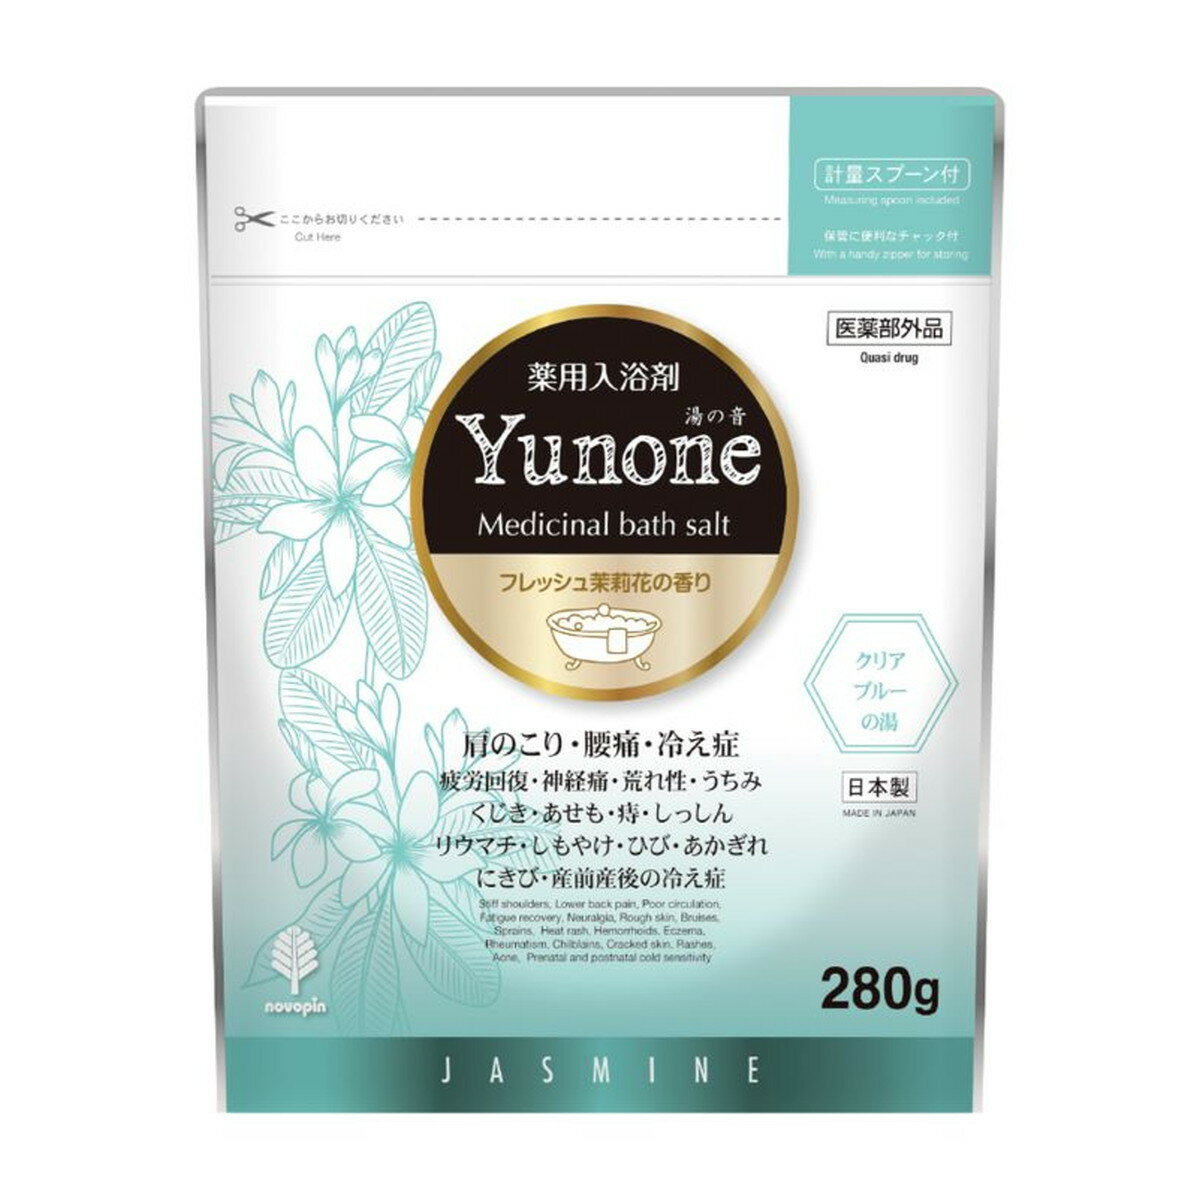 【令和・早い者勝ちセール】紀陽除虫菊 湯の音 Yunone フレッシュジャスミンの香り 280g 薬用 入浴剤